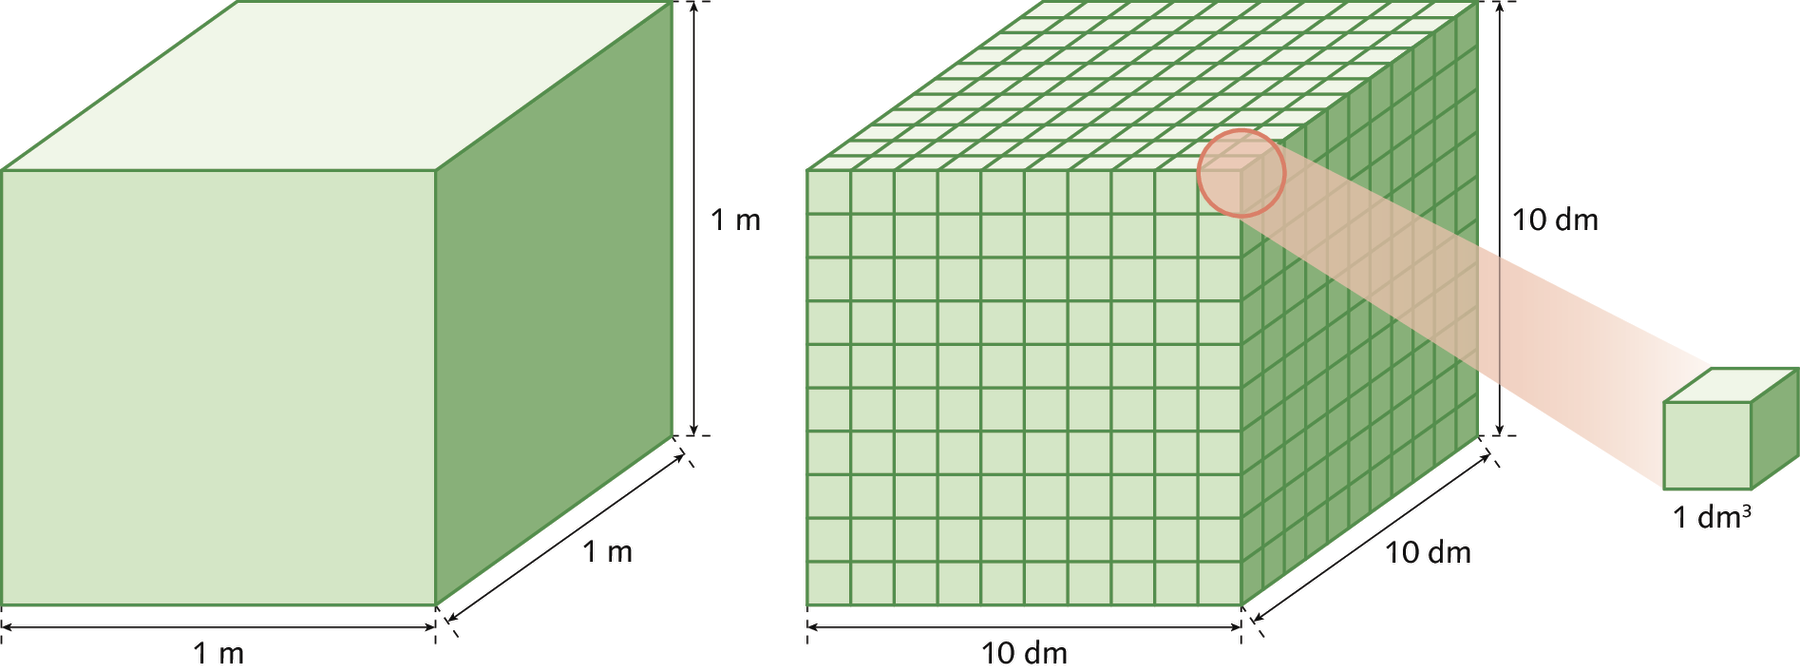 Ilustração. A imagem da esquerda apresenta um cubo verde, de arestas medindo 1 metro. Na segunda imagem cada aresta foi dividida em 10 partes congruentes, de modo que cada aresta do cubo passou a medir 10 decímetros. A figura toda ficou dividida em pequenos cubos e um deles foi ampliado, por um círculo bege com segmentos tangenciando sua circunferência, indicando que cada pequeno cubo tem volume de 1 decímetro cúbico.